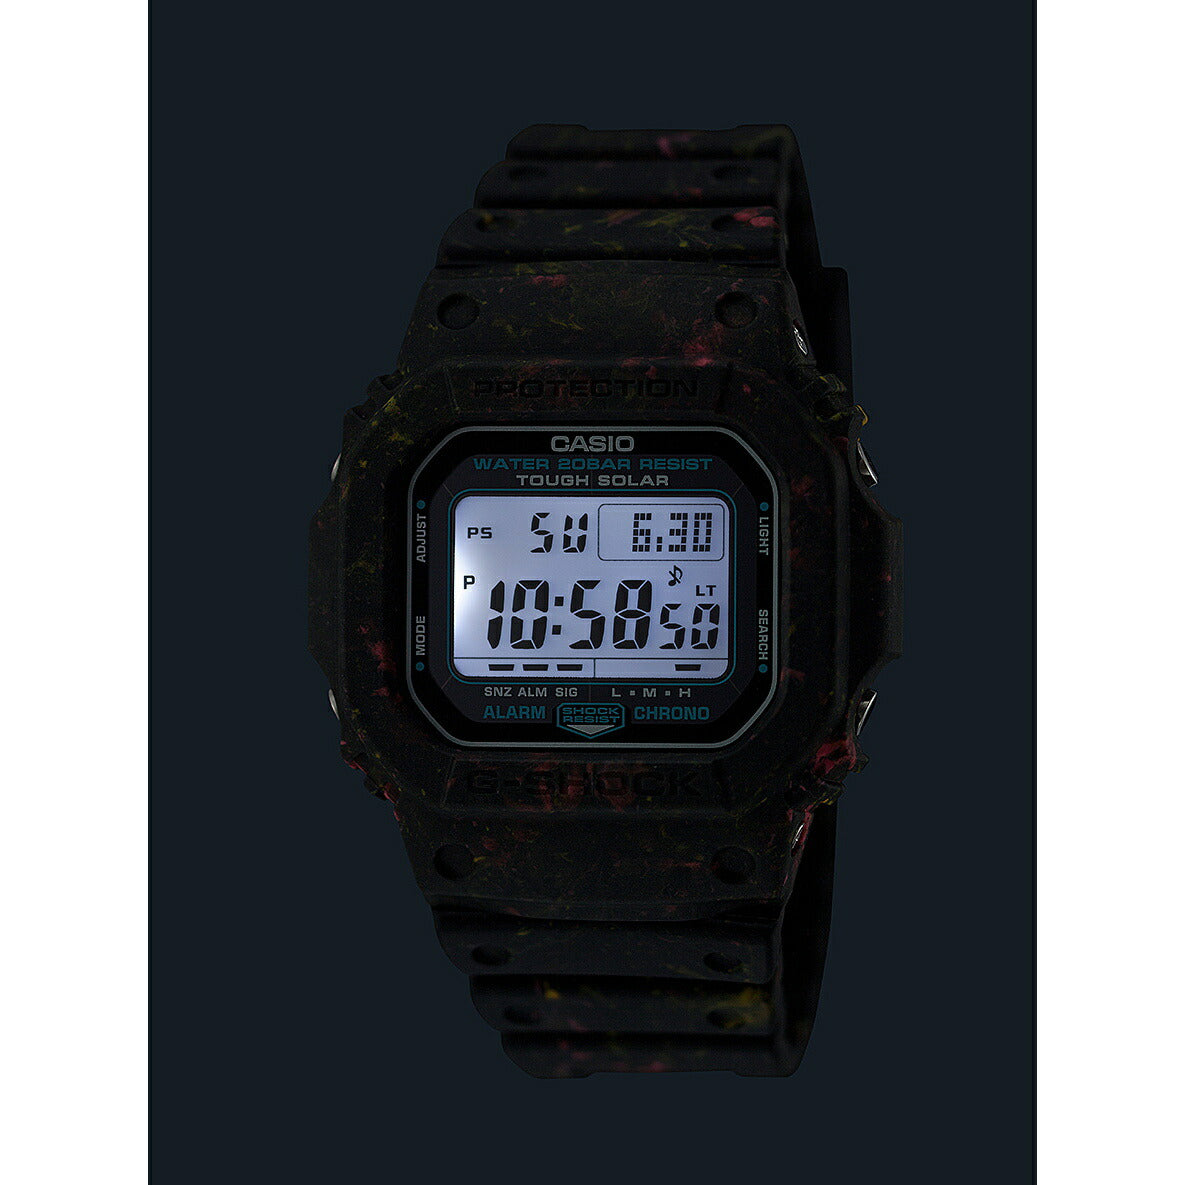 G-SHOCK カシオ Gショック CASIO G-5600BG-1JR ソーラー デジタル メンズ 腕時計 タフソーラー マットブラック 環境負荷低減素材使用【2024 新作】